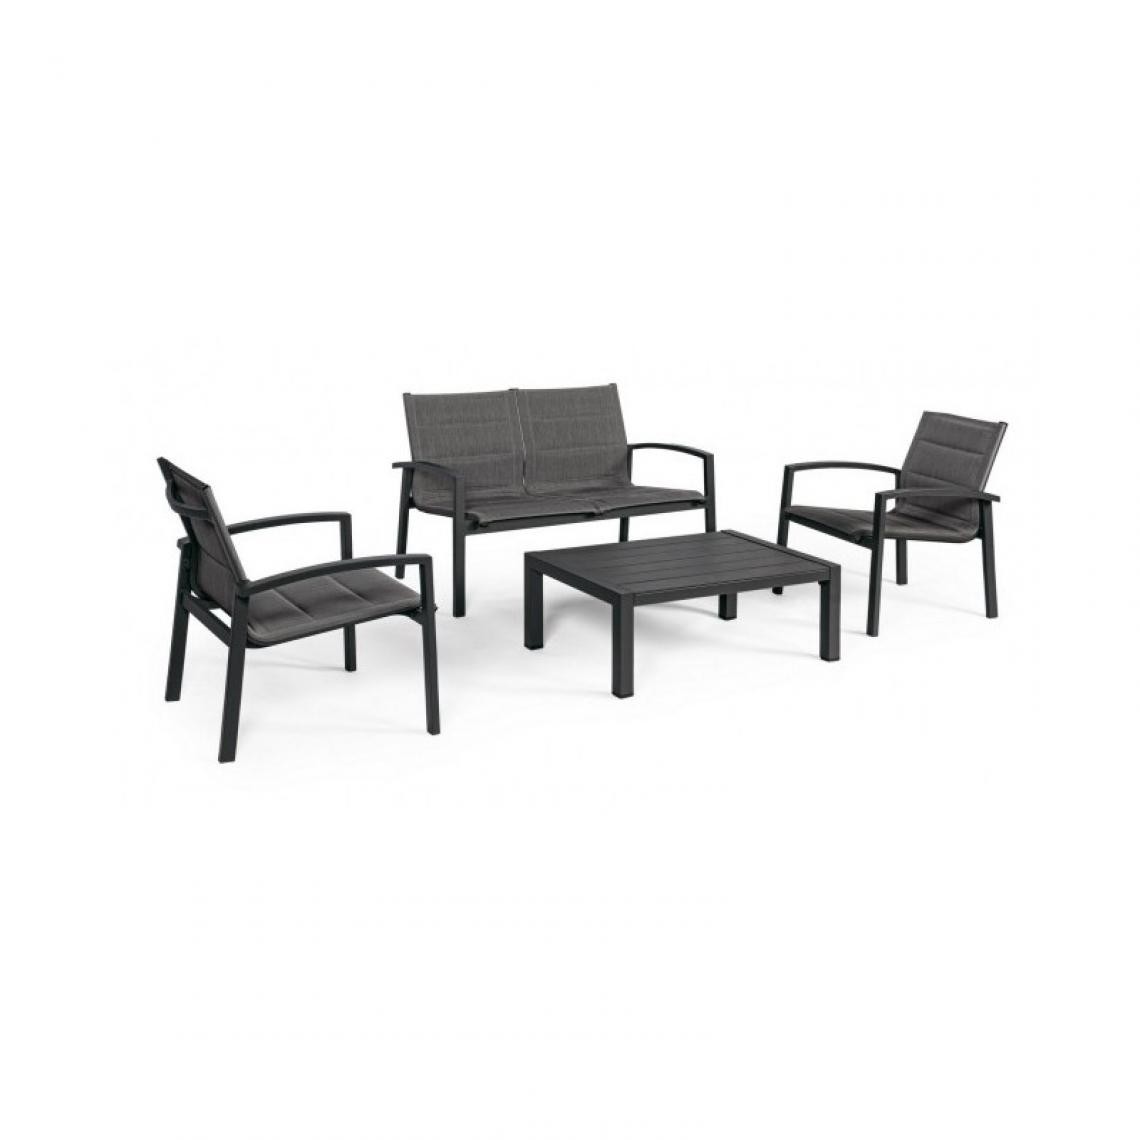 Webmarketpoint - Ensemble de jardin Salon en aluminium Anthracite LAIKEN YK13 quatre pièces - Ensembles tables et chaises